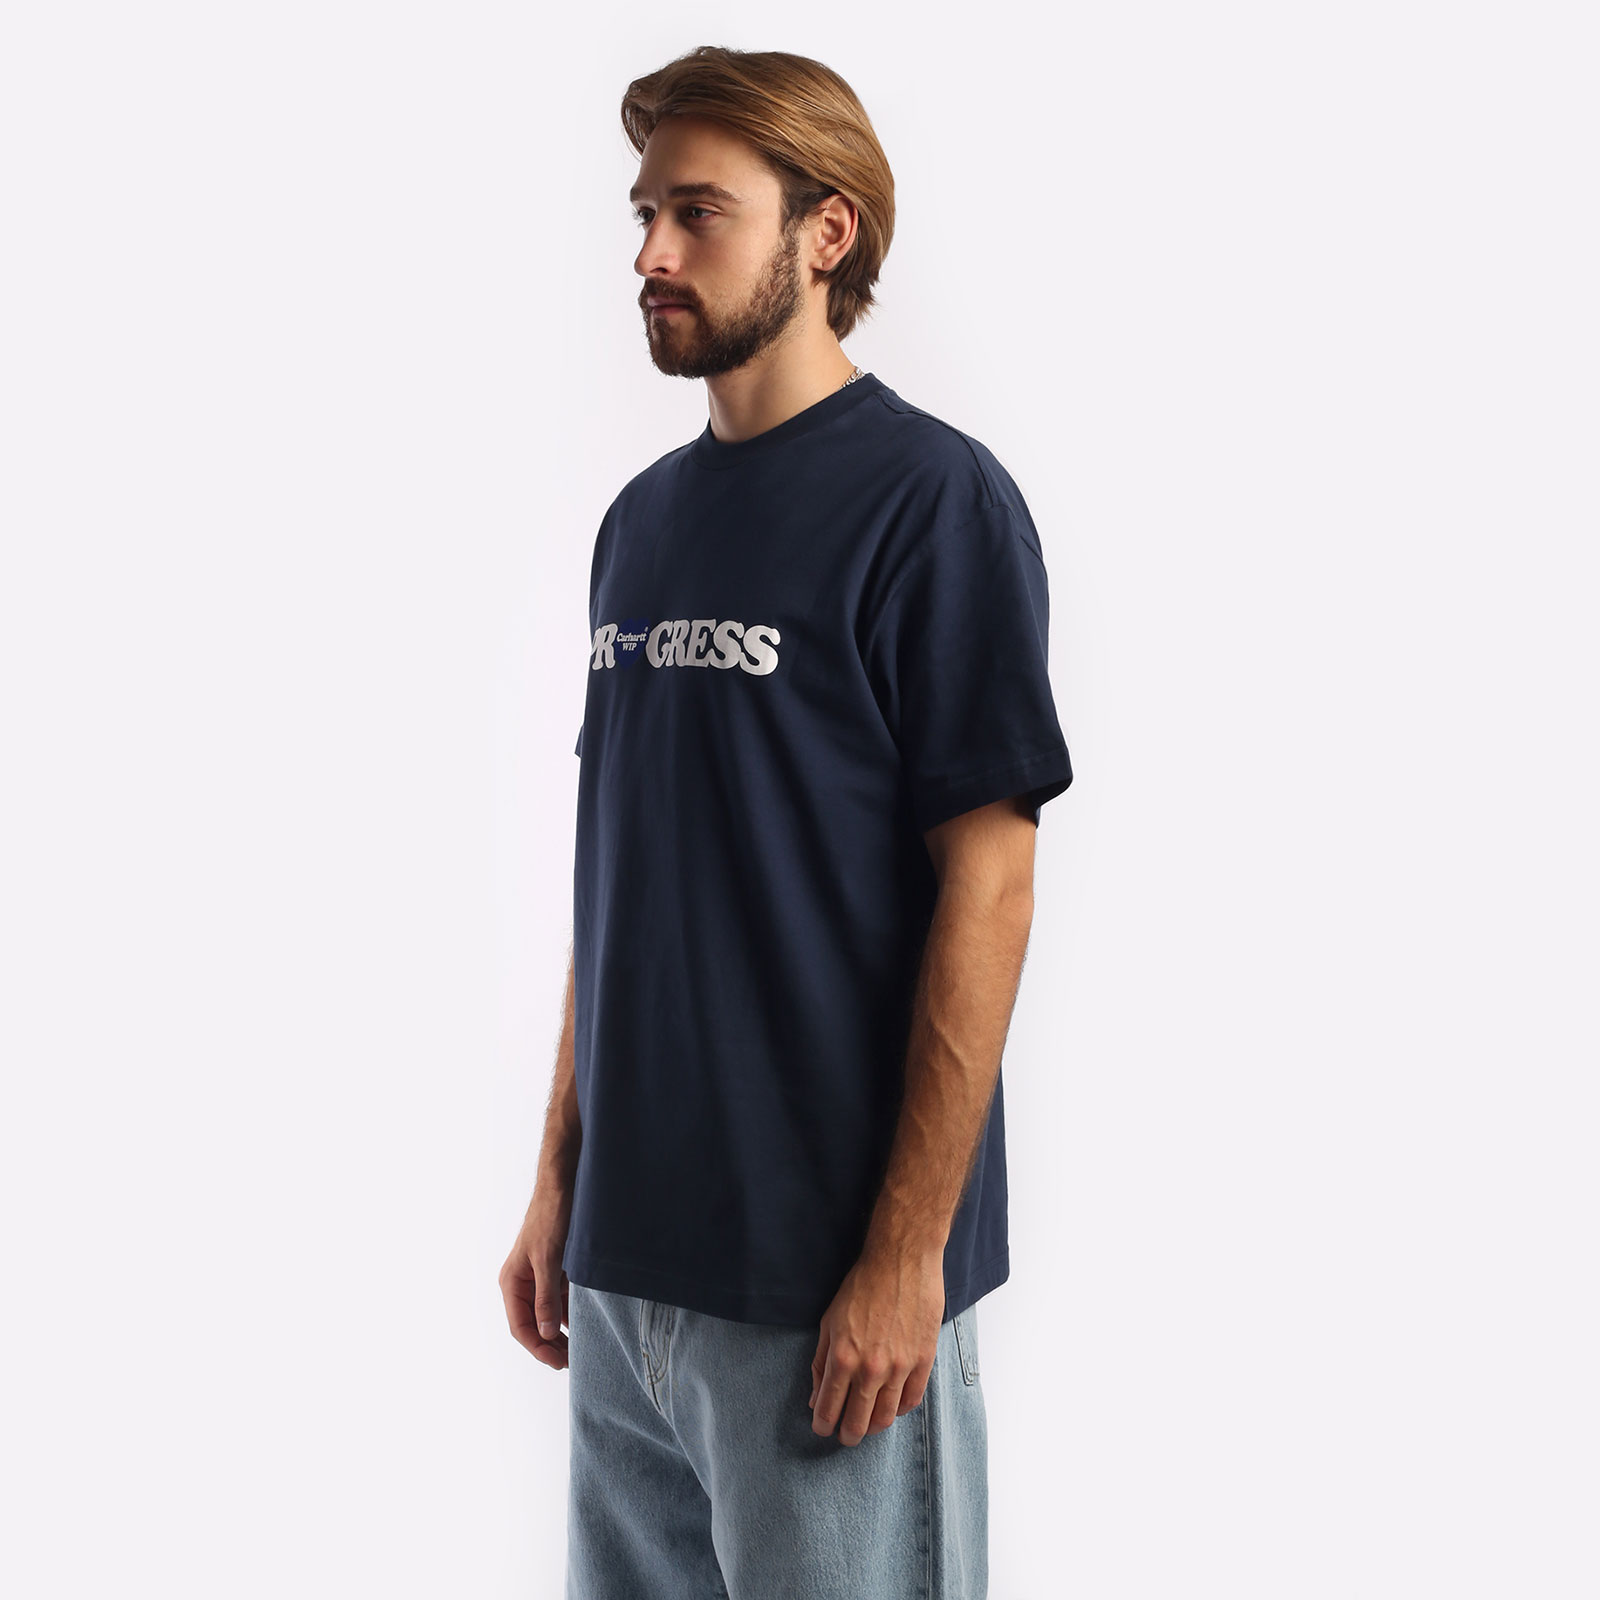 мужская синяя футболка Carhartt WIP S/S I Heart Progress T-Shirt I032378-blue - цена, описание, фото 4